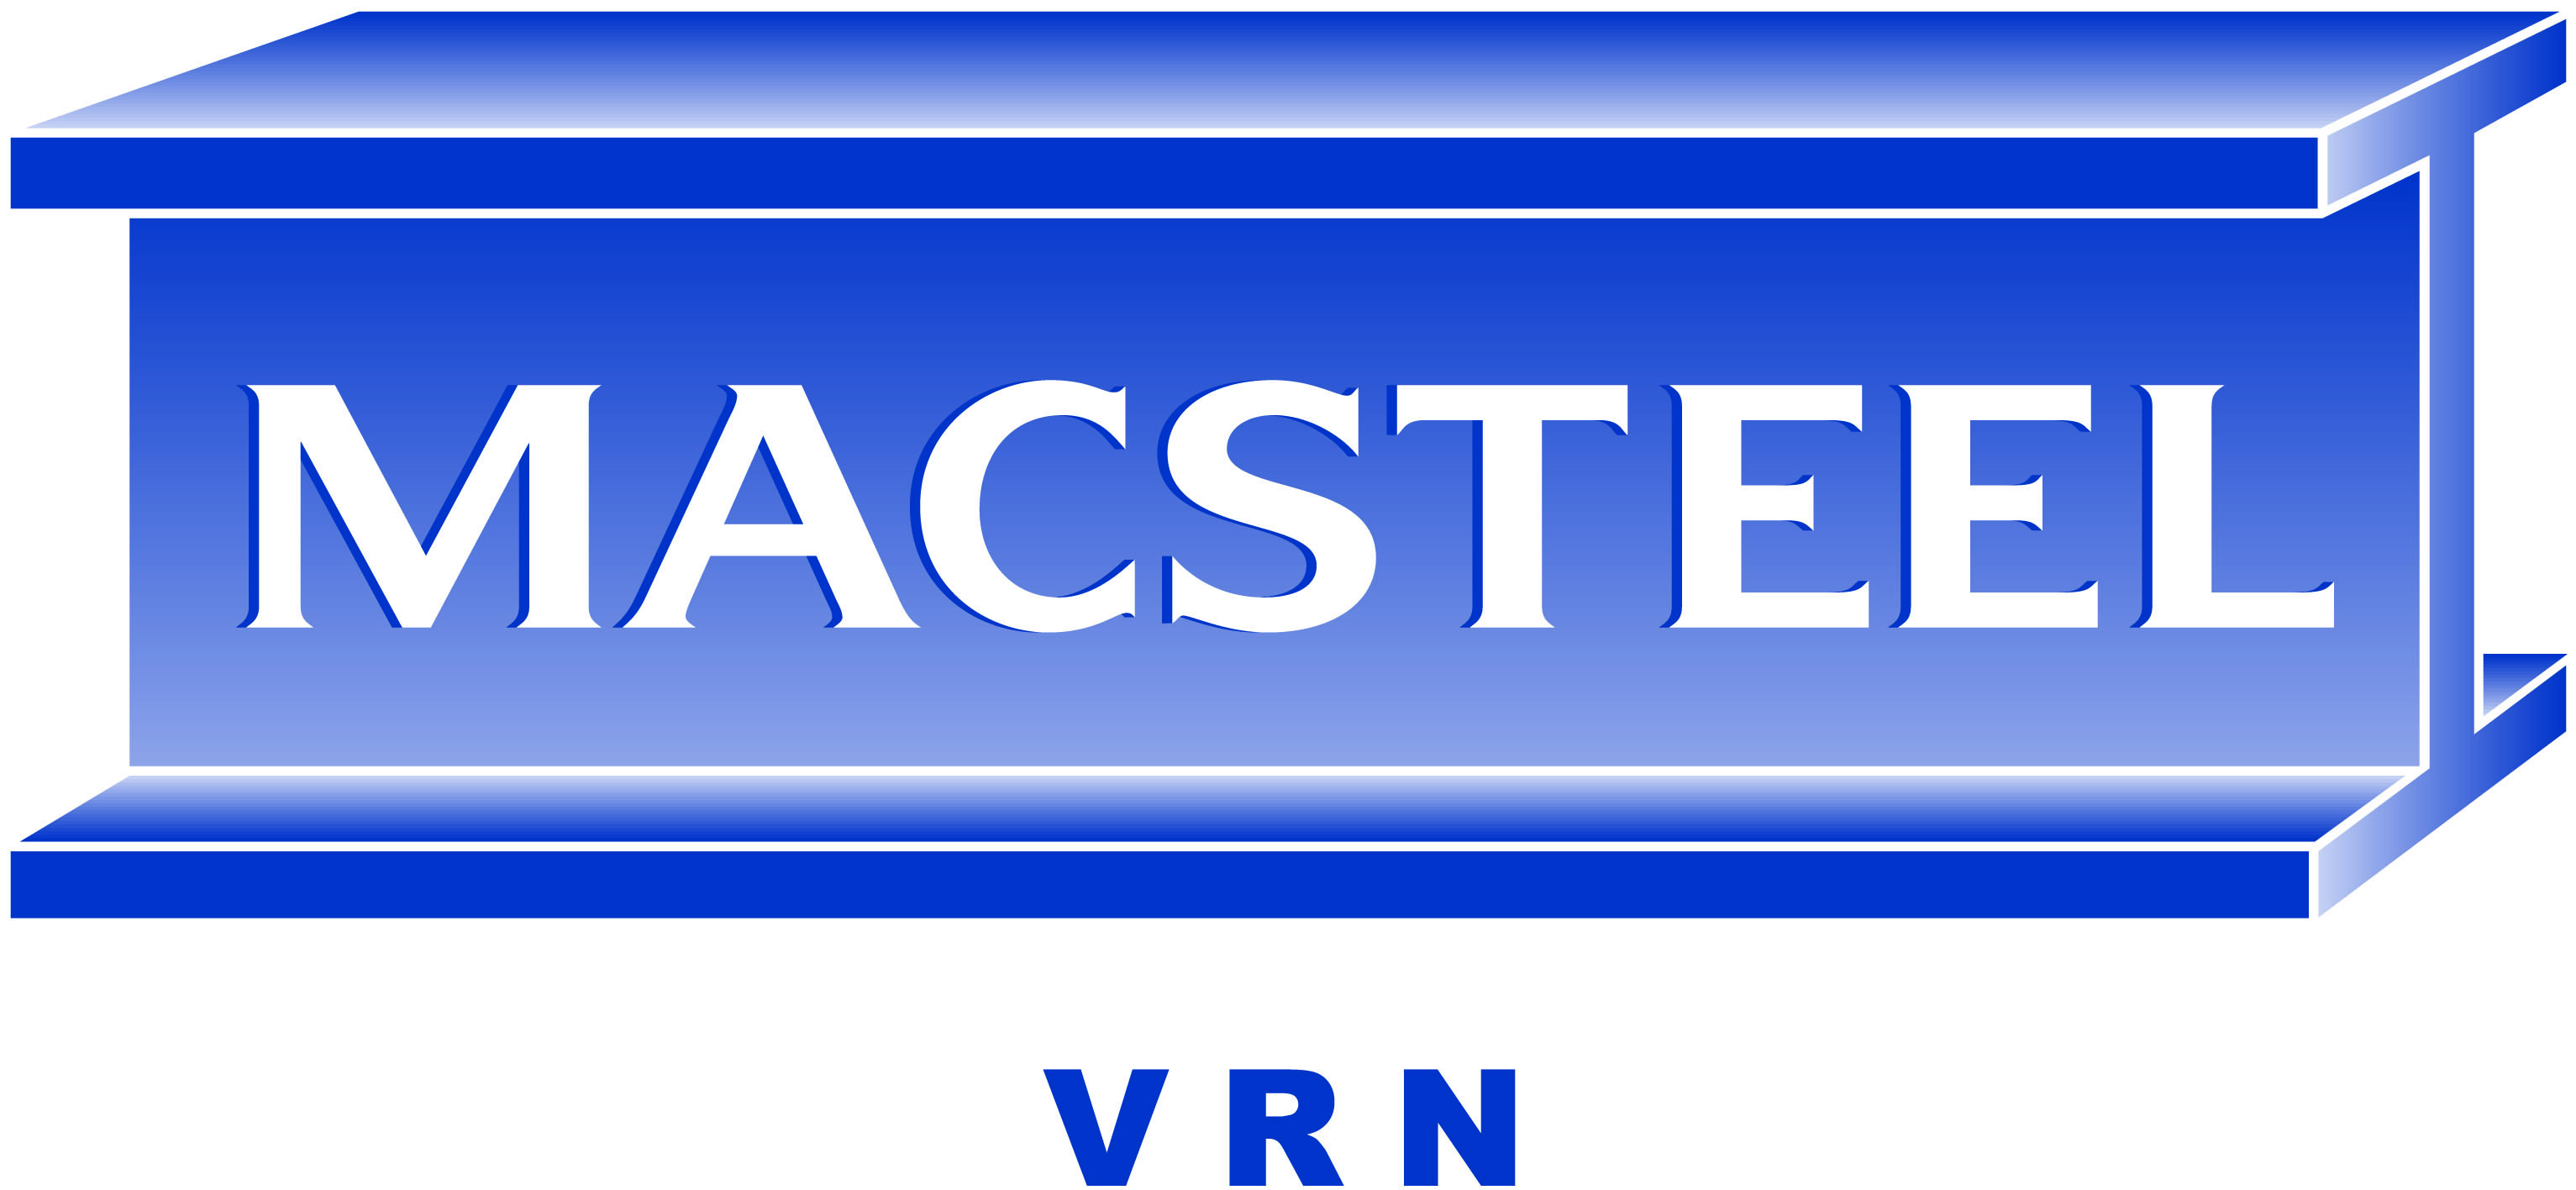 Macsteel VRN – Springbok logo